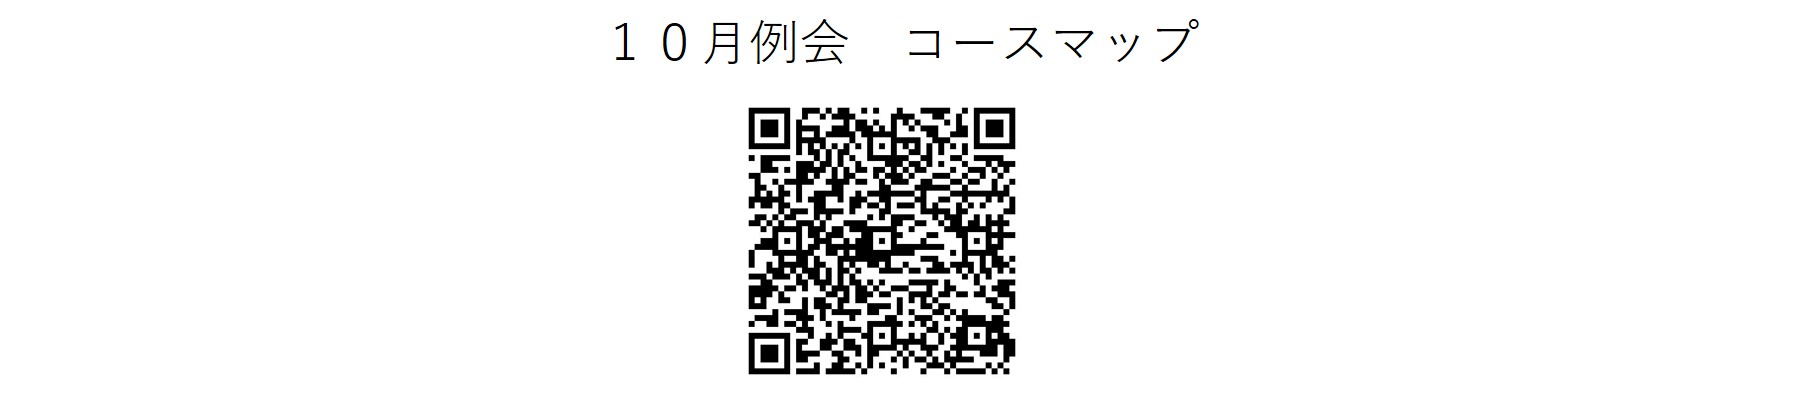 かしわんぽ用10月例会コースマップ.jpg